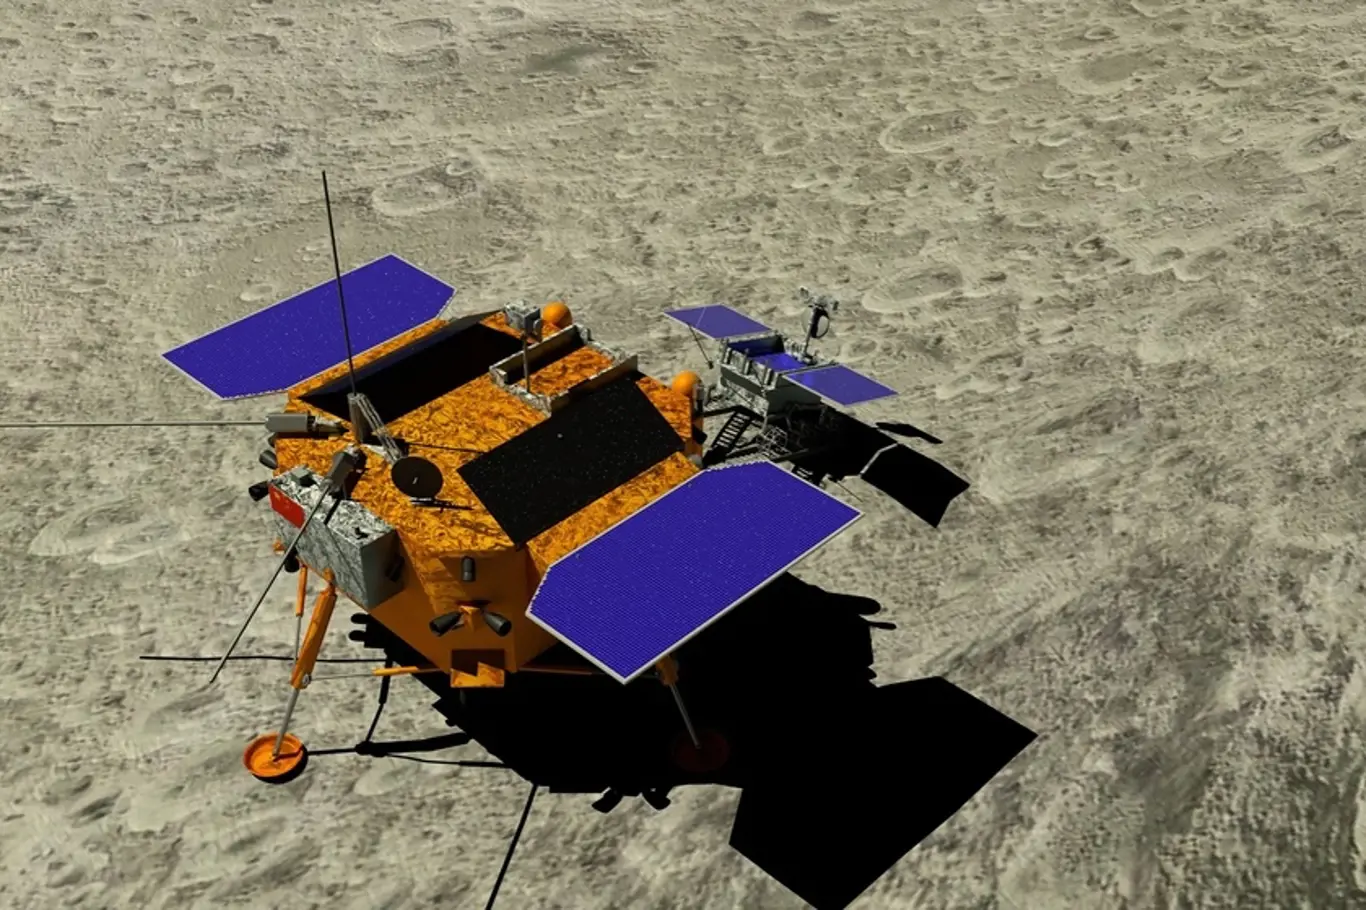 Lunar Rover objevil záhadné skleněné koule na odvrácené straně Měsíce